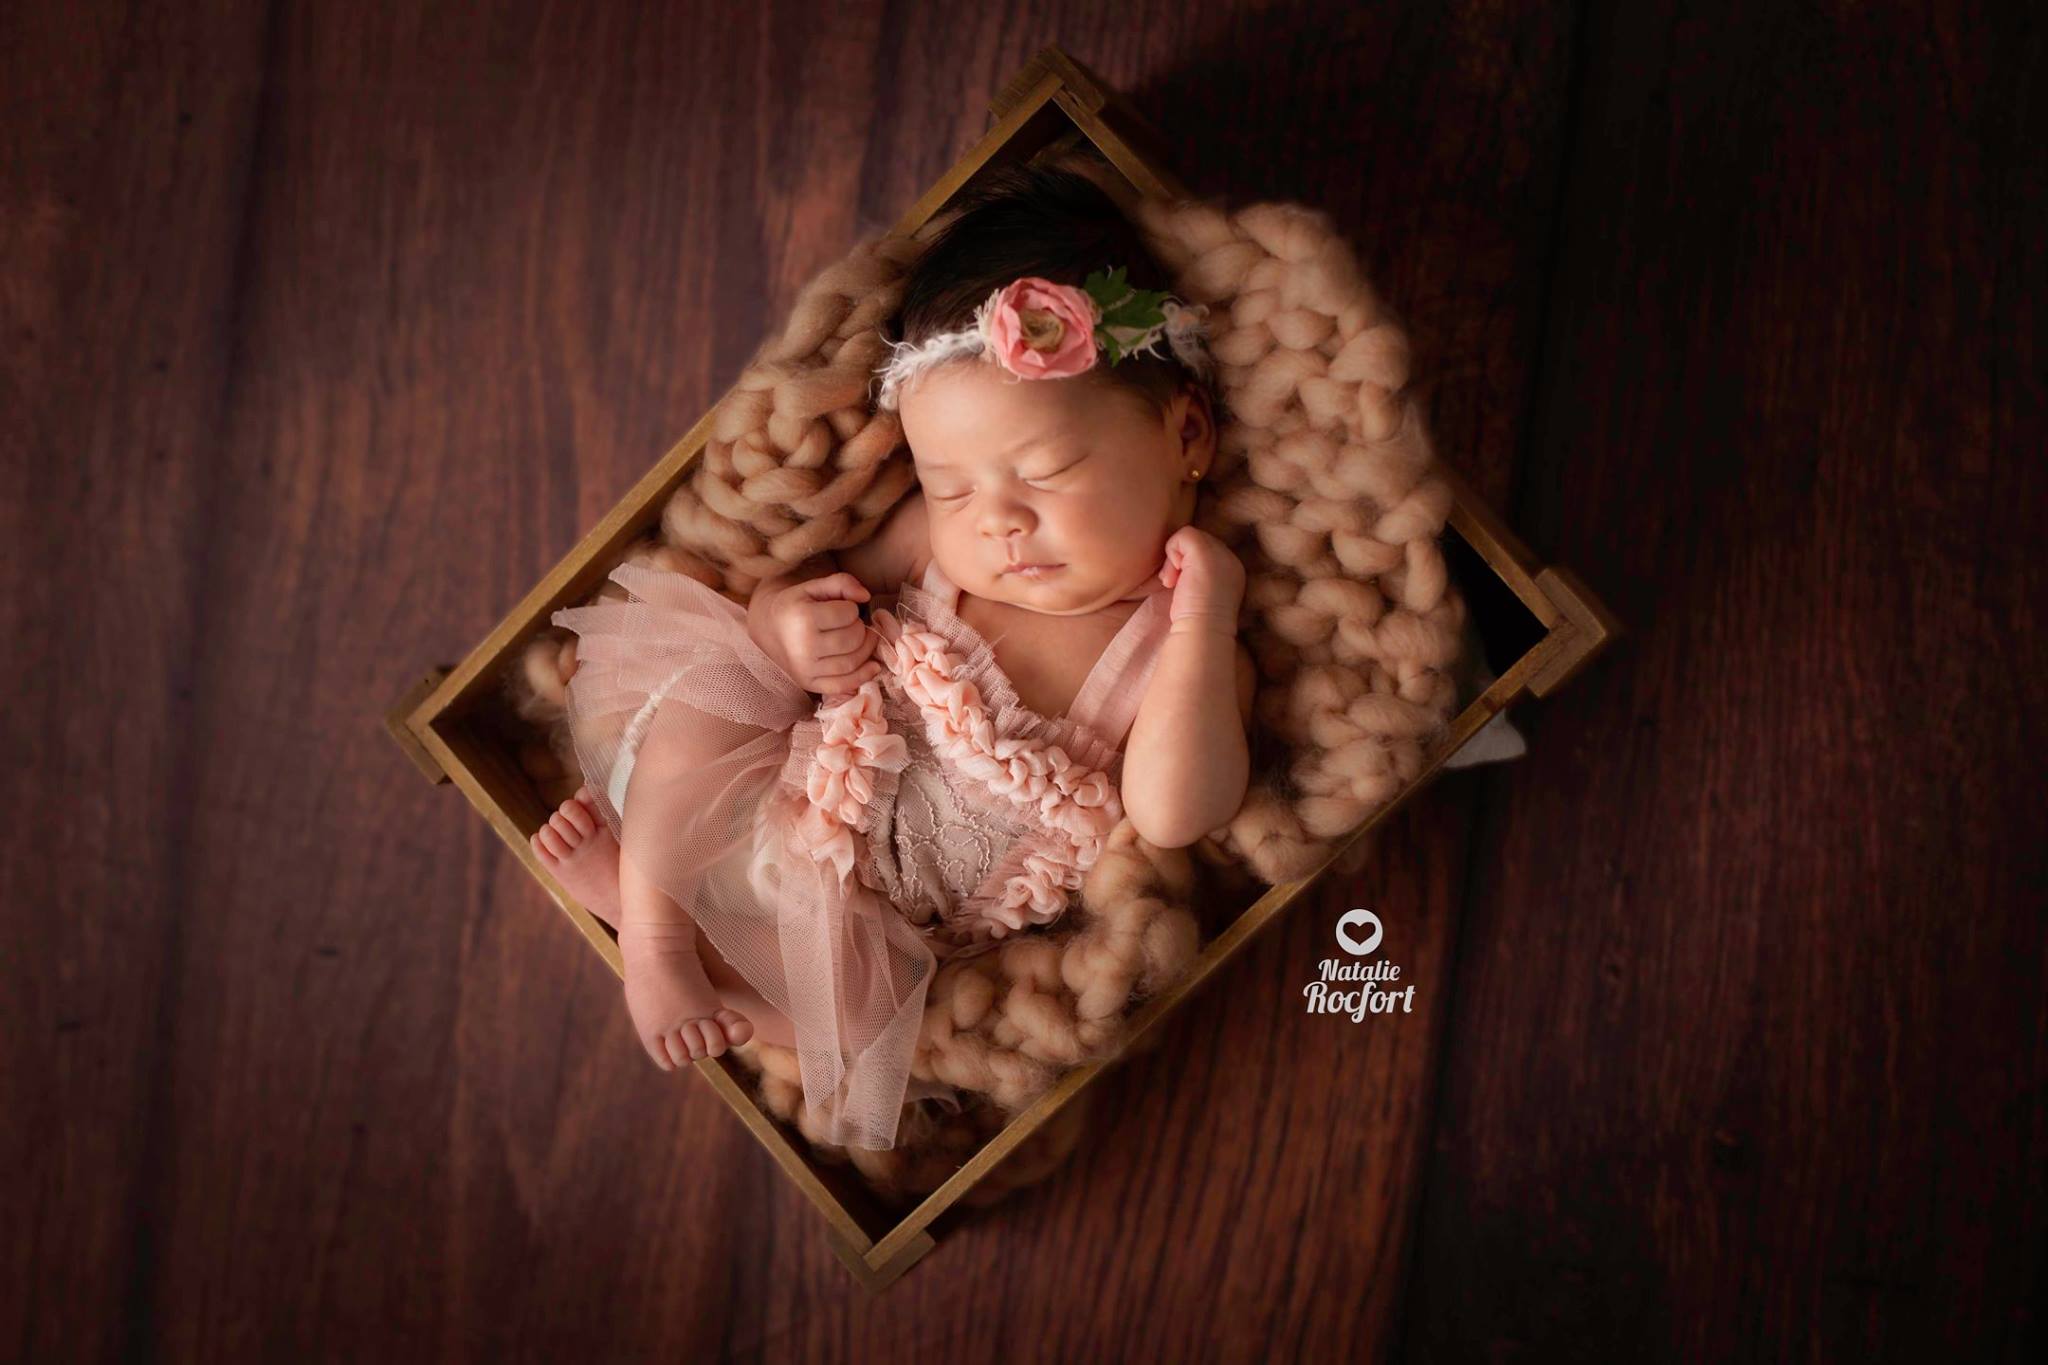 Vera Rocfort fondo marrón con cajita fotografía bebés newborn Lima Perú Natalie Rocfort